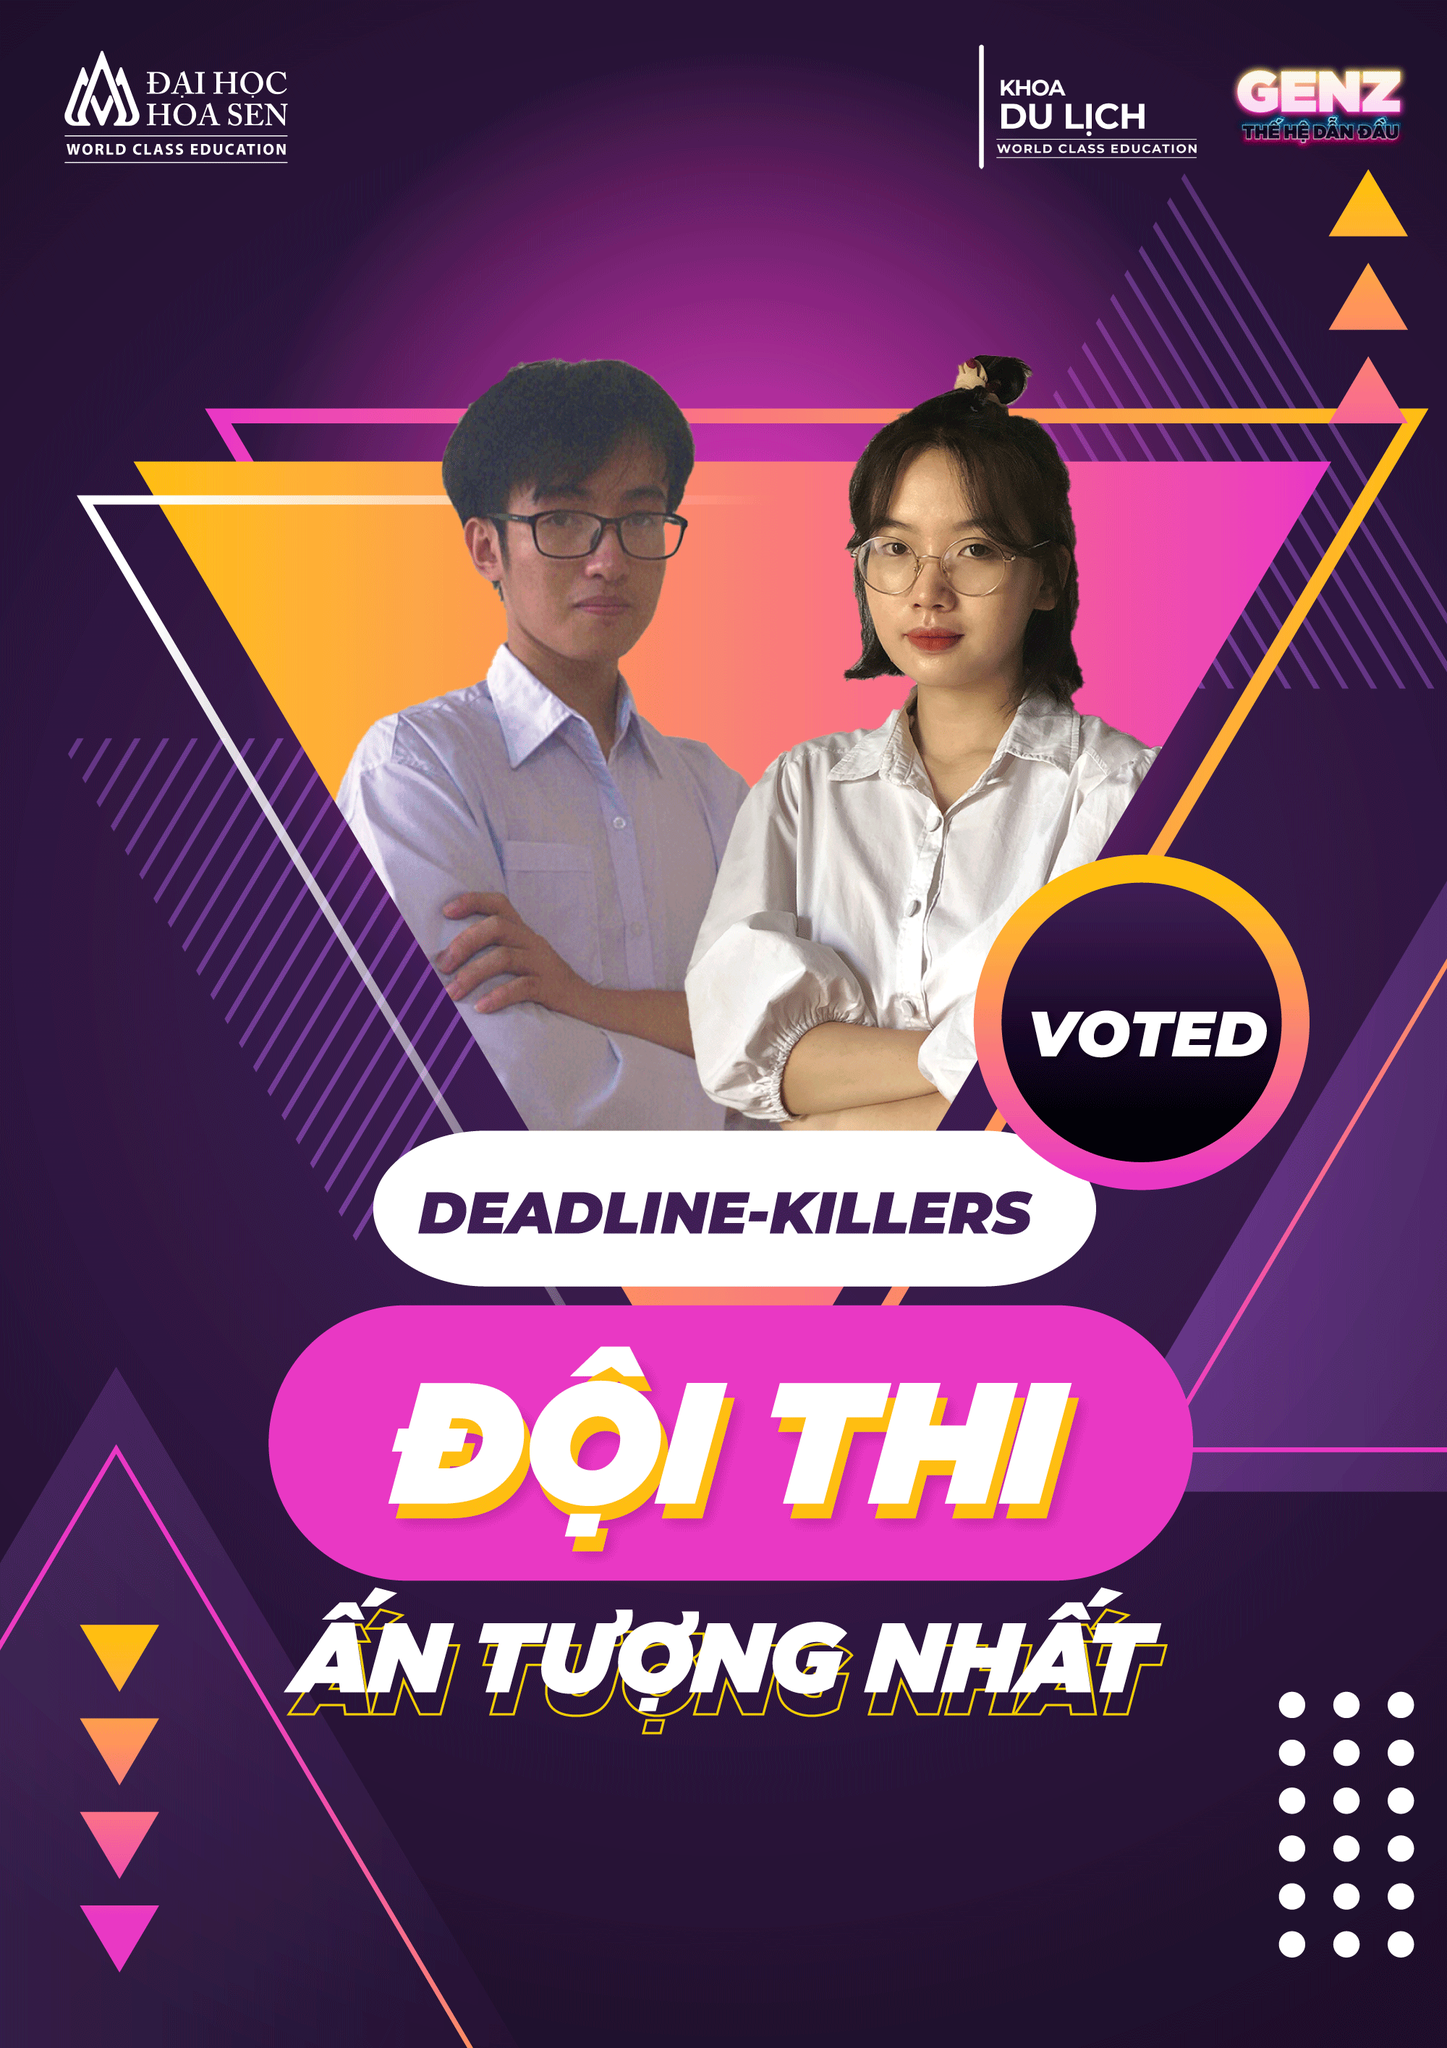 May be a cartoon of 2 people and text that says 'ĐẠI HỌC HOASEN Û KHOA DU LICH GENZ Û R VOTED DEADLINE-KILLERS ĐỘI THI ÂN TƯỢNG NHẤT D'